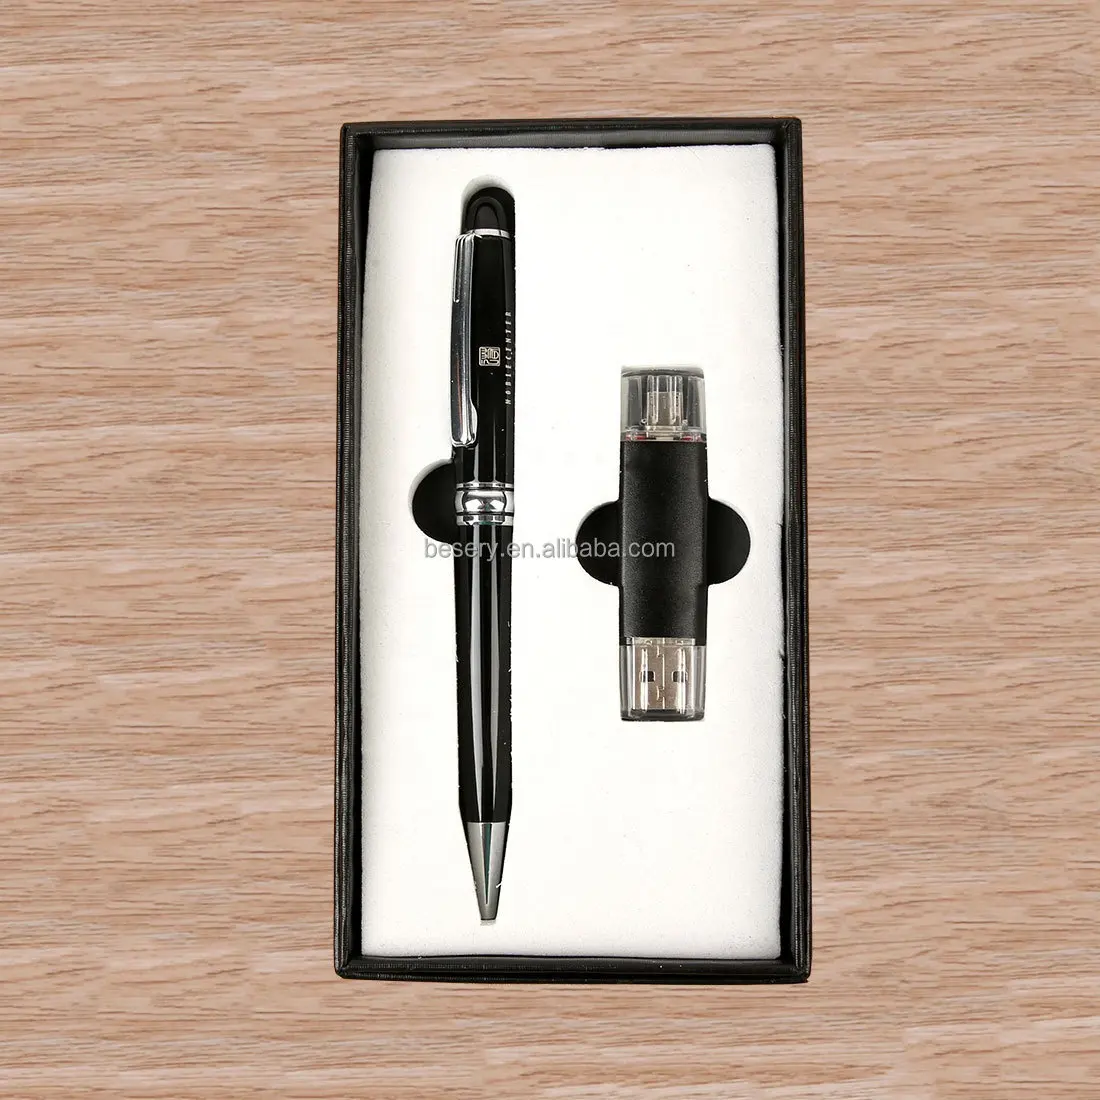 Personalizado Corporativo Lembrança Presente itens promocionais Usb Flash Drive caneta combo set Stationary Father's Day Business Gift Set